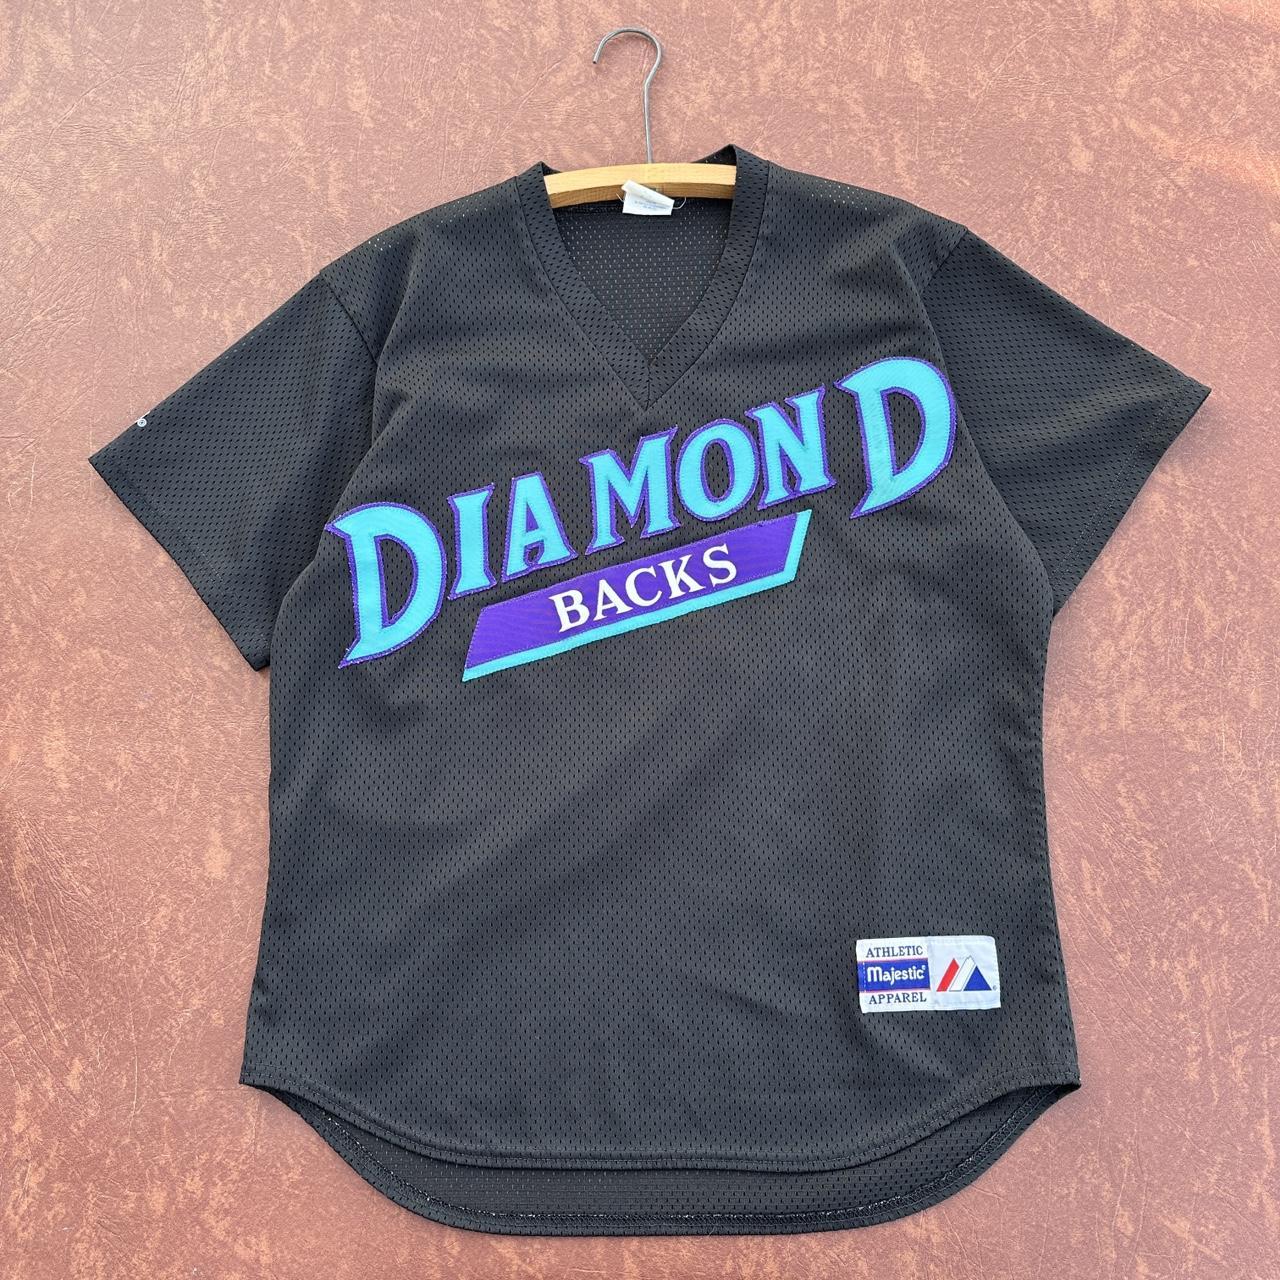 black diamond back jersey